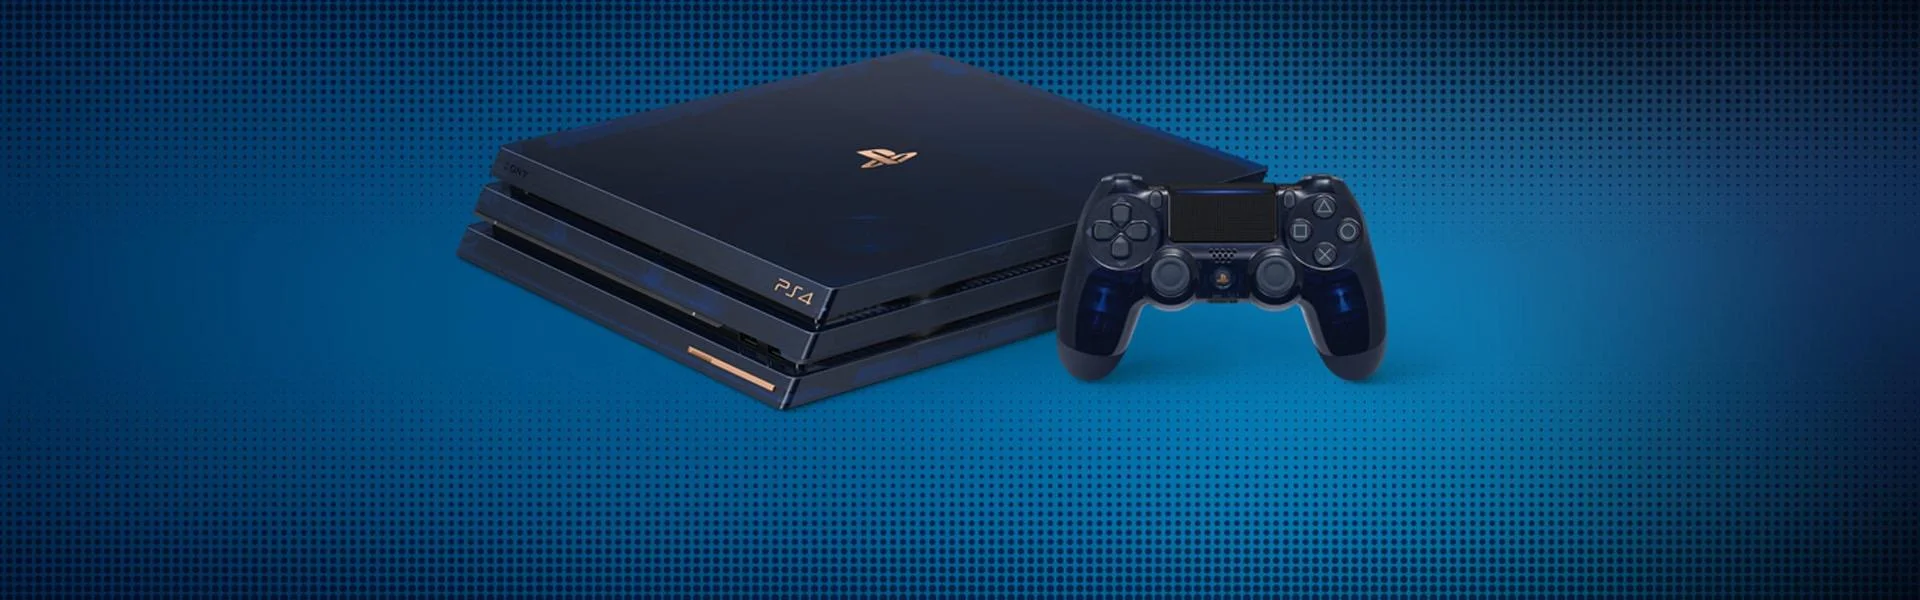 Продано 500 млн консолей PlayStation. В честь этого можно купить особую красивую версию PS4 Pro - фото 1